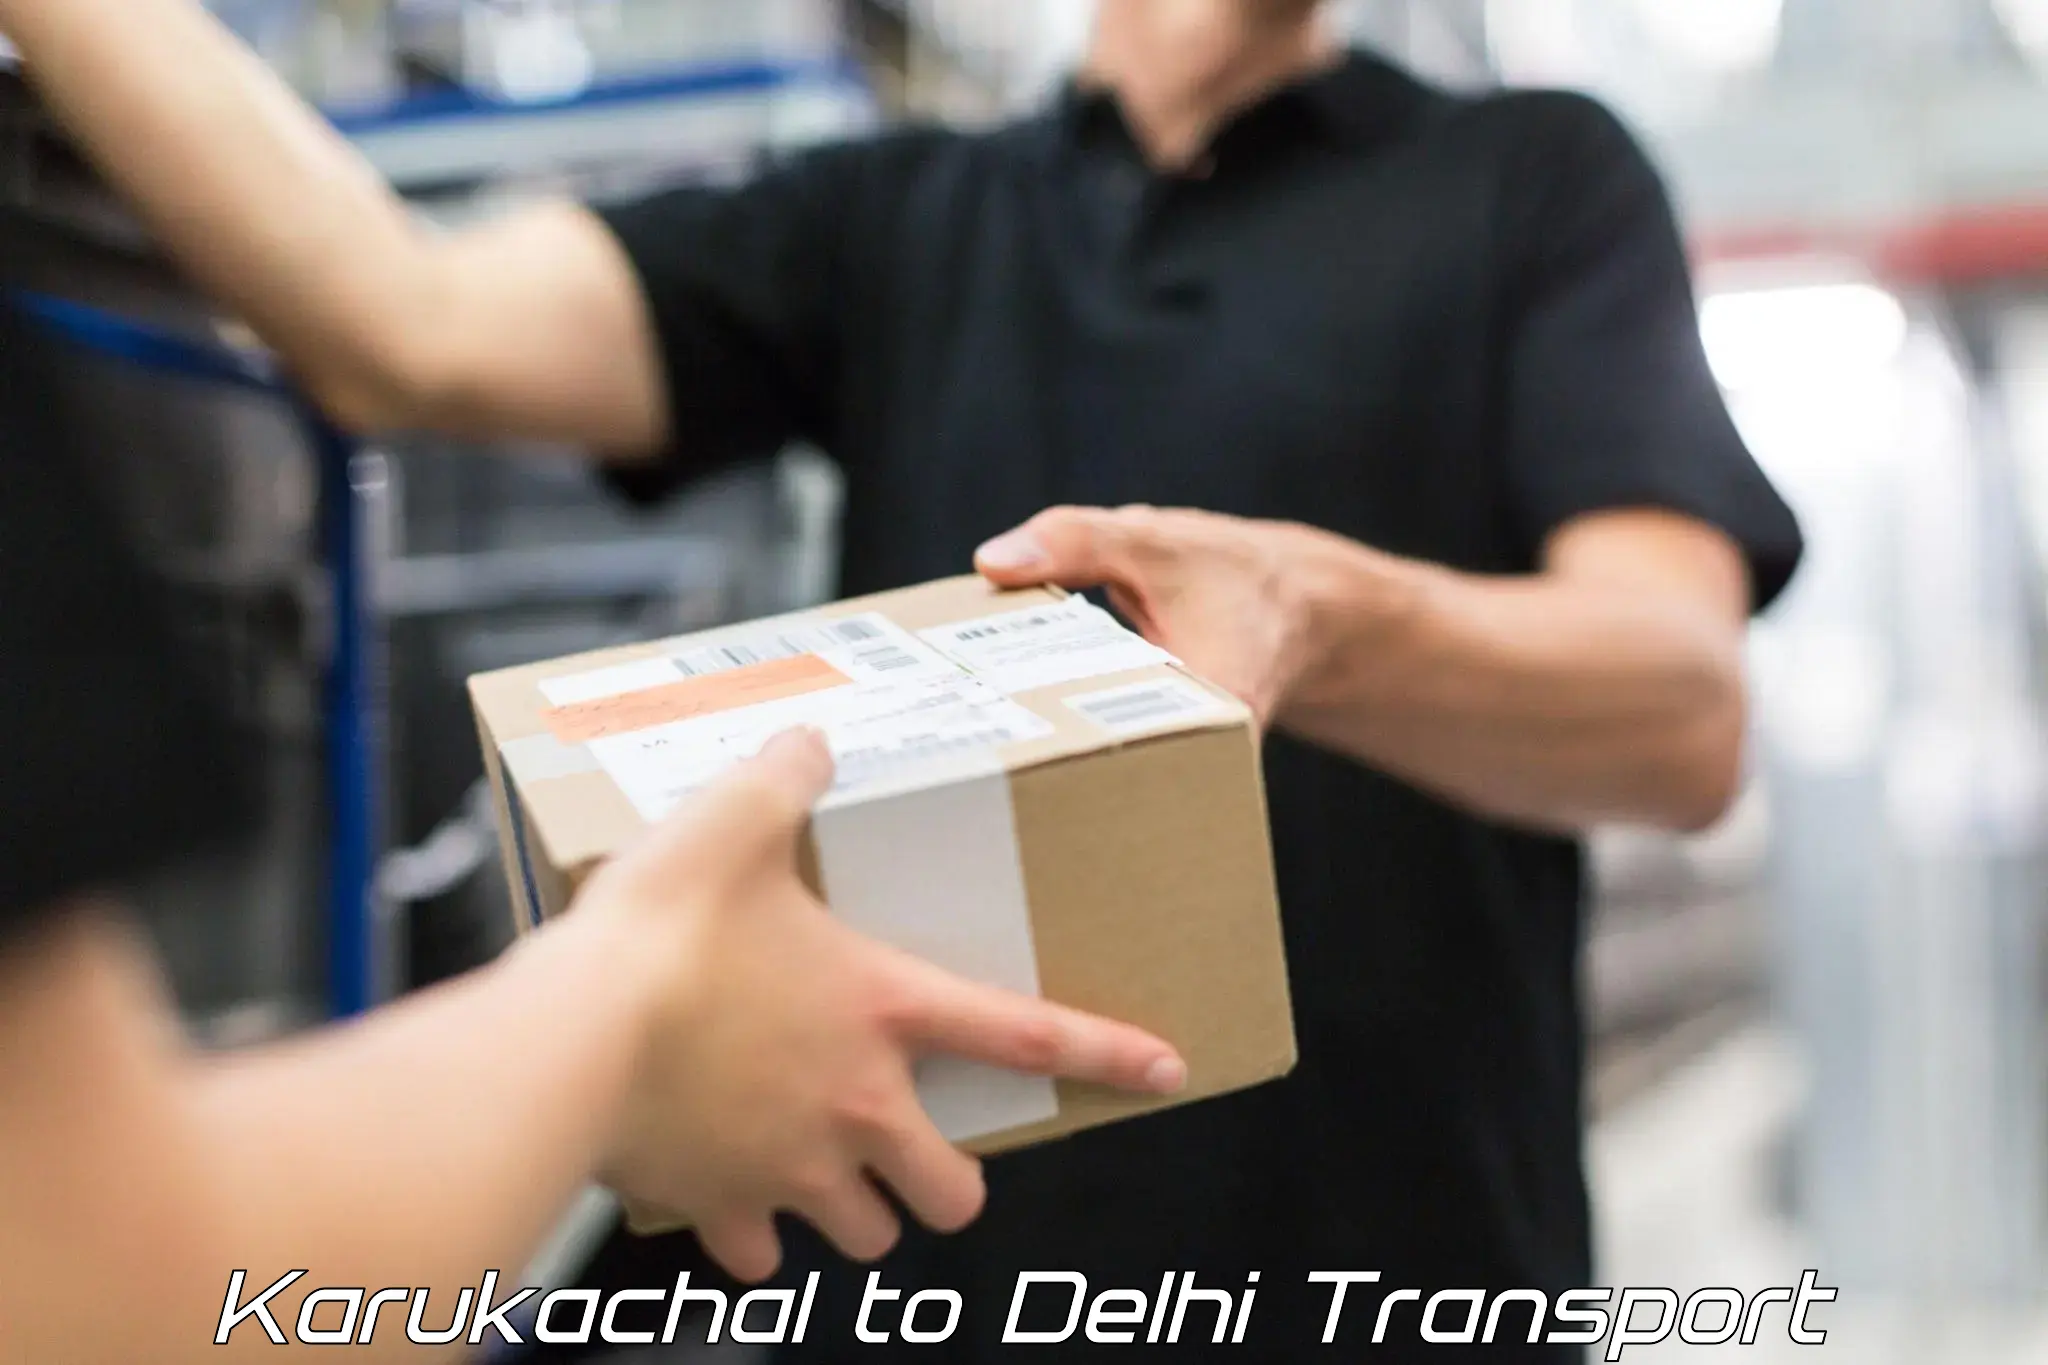 Daily transport service Karukachal to IIT Delhi